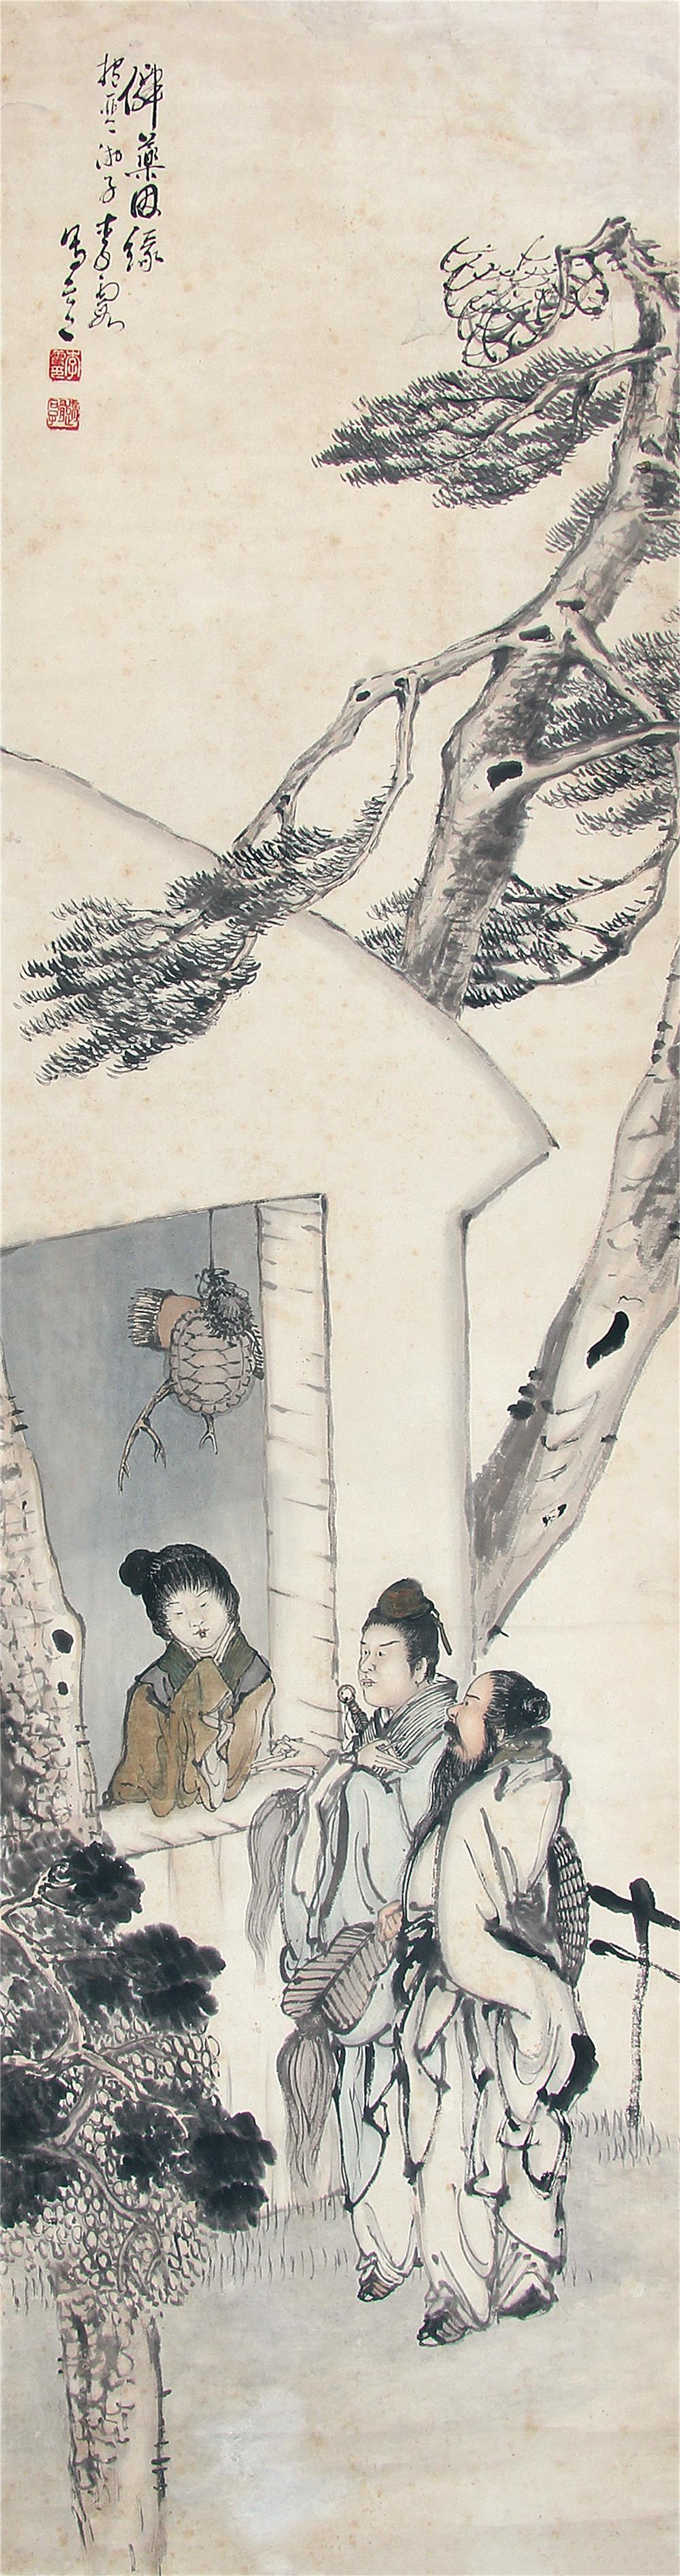 0平尺 出版《中国近代古典人物画名家精品·李霞》p35,福建美术出版